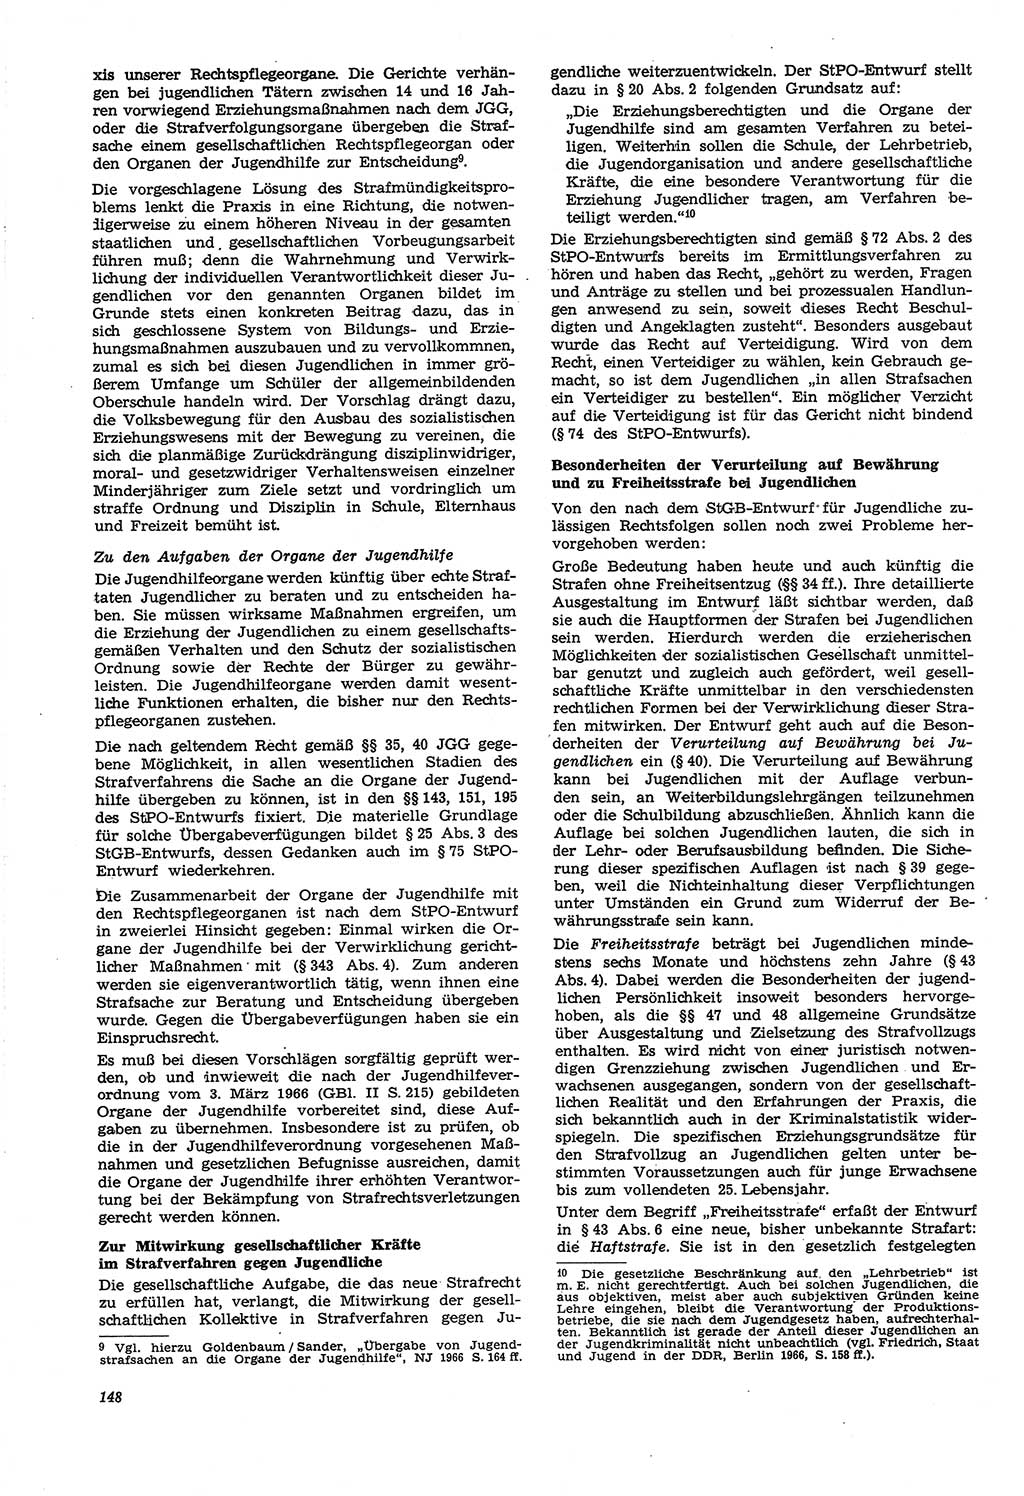 Neue Justiz (NJ), Zeitschrift für Recht und Rechtswissenschaft [Deutsche Demokratische Republik (DDR)], 21. Jahrgang 1967, Seite 148 (NJ DDR 1967, S. 148)